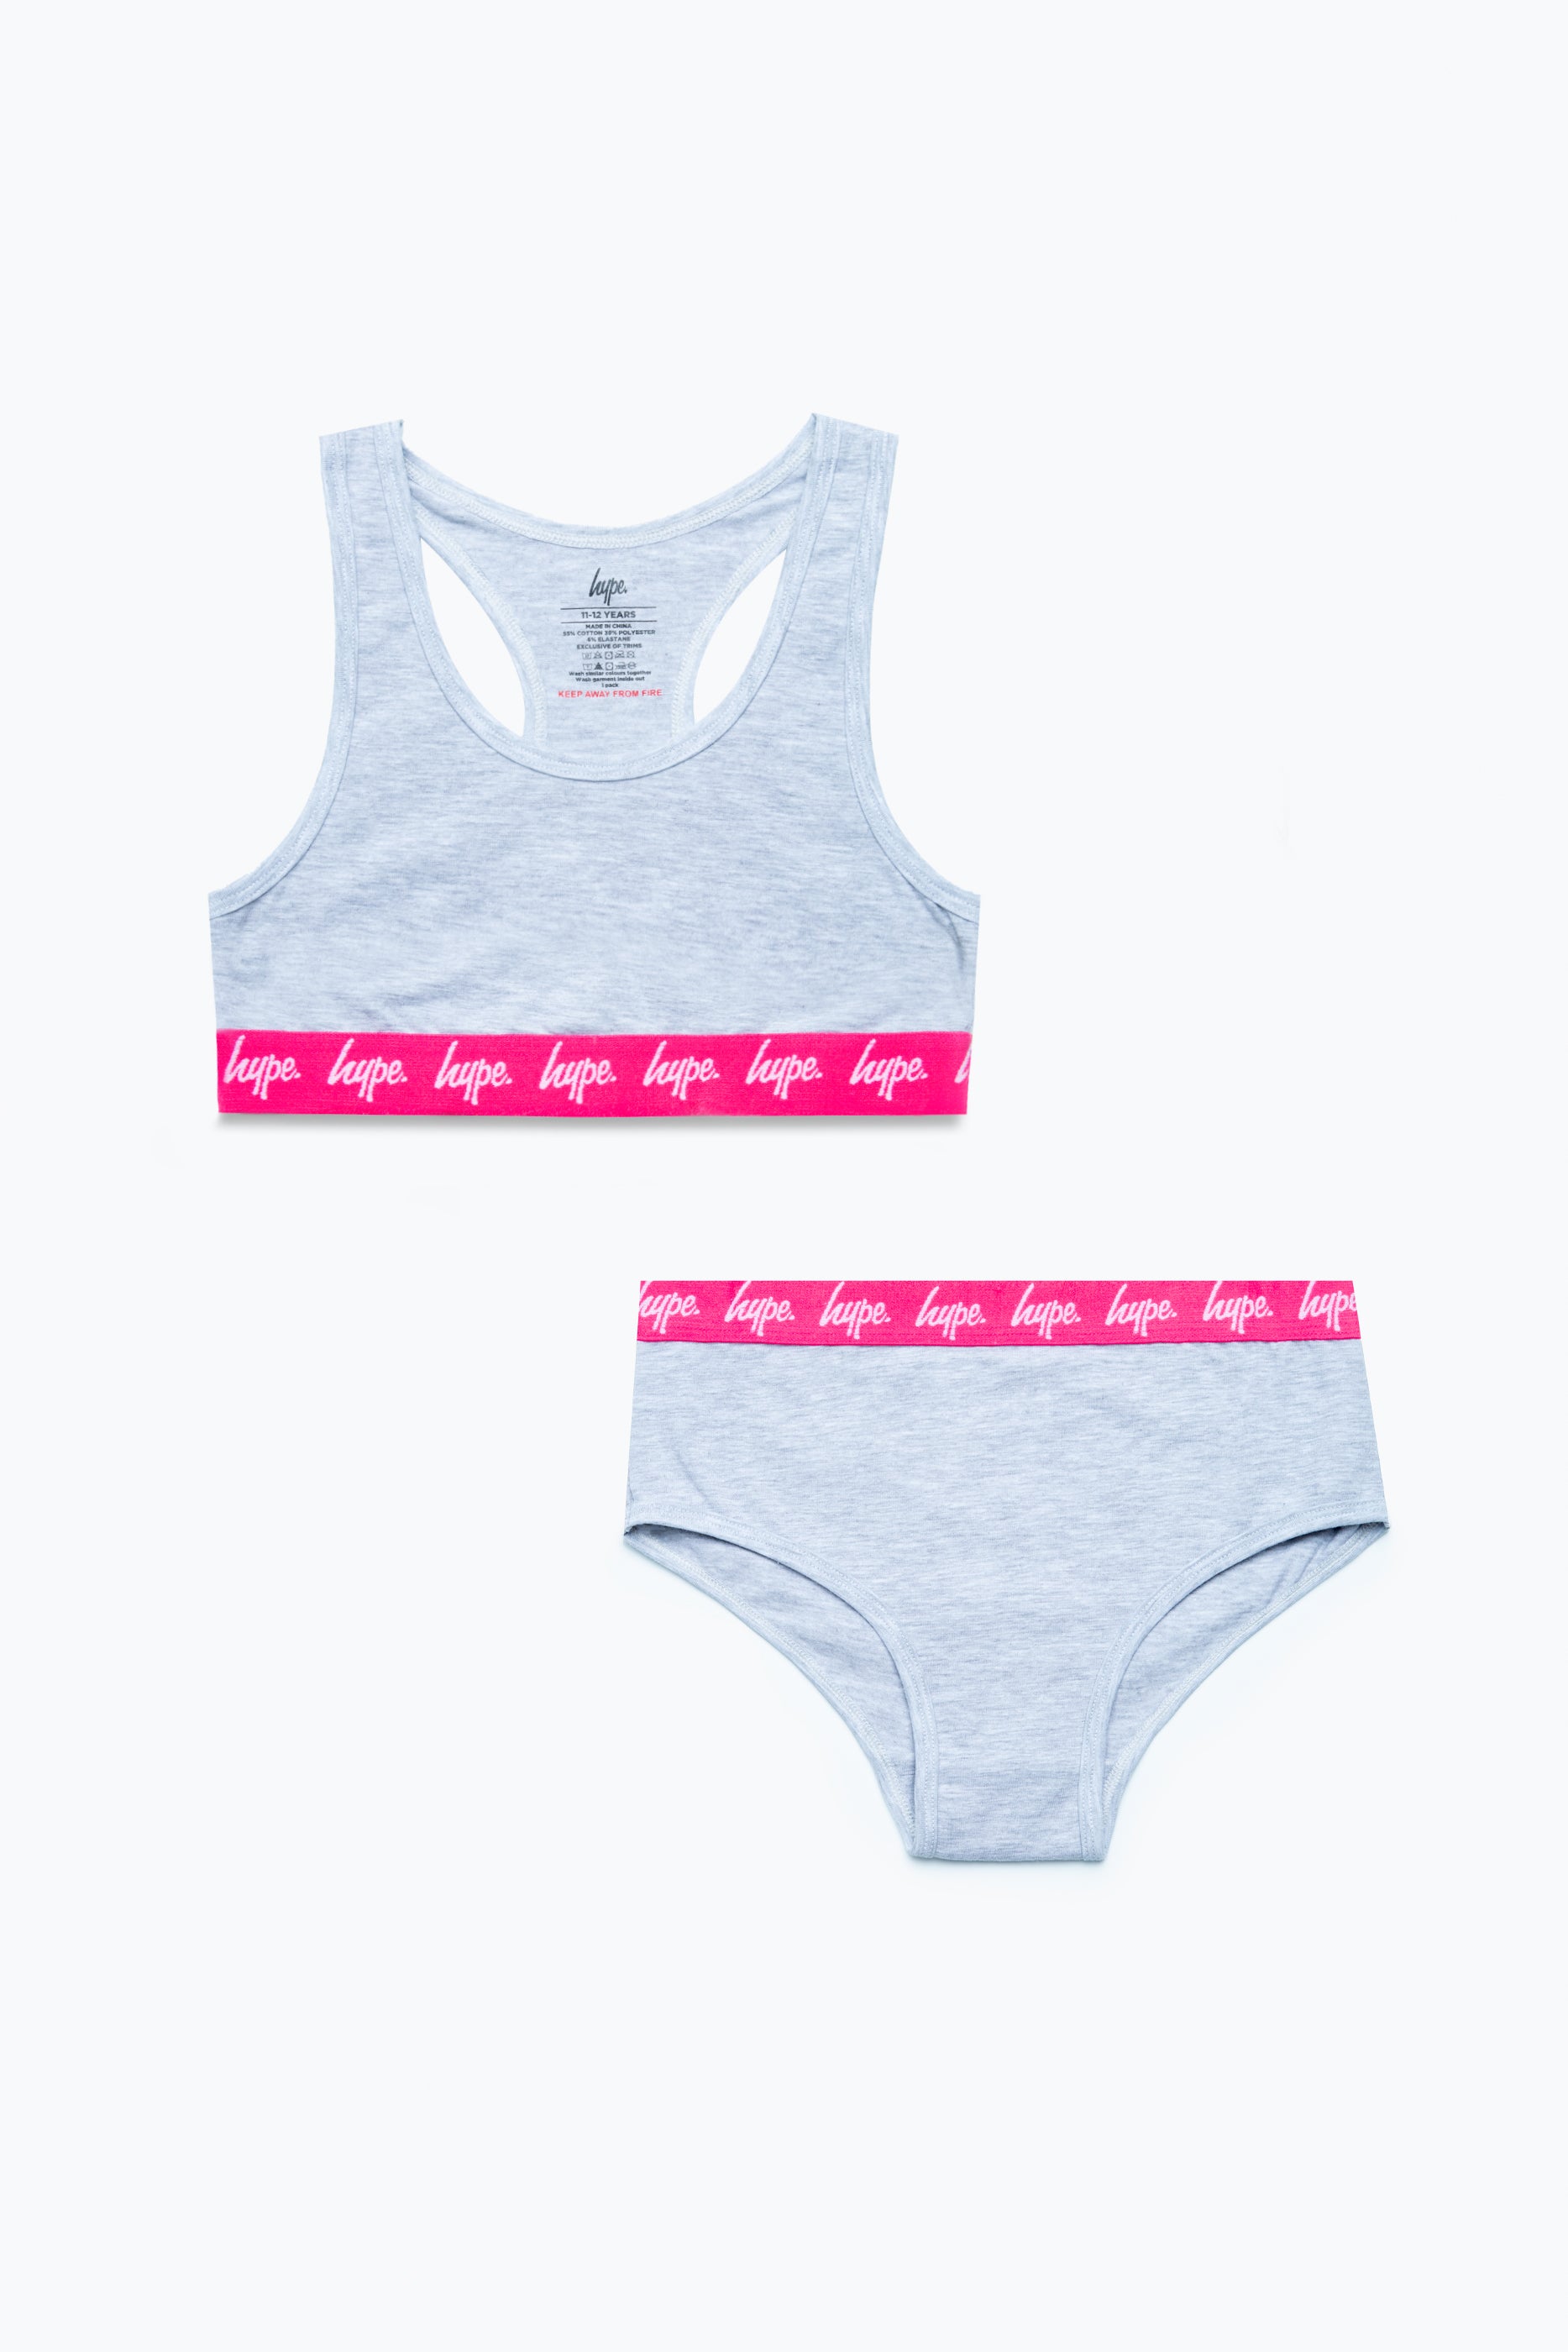 Calvin Klein Girls Logo Underwear Set in Pink & Grey